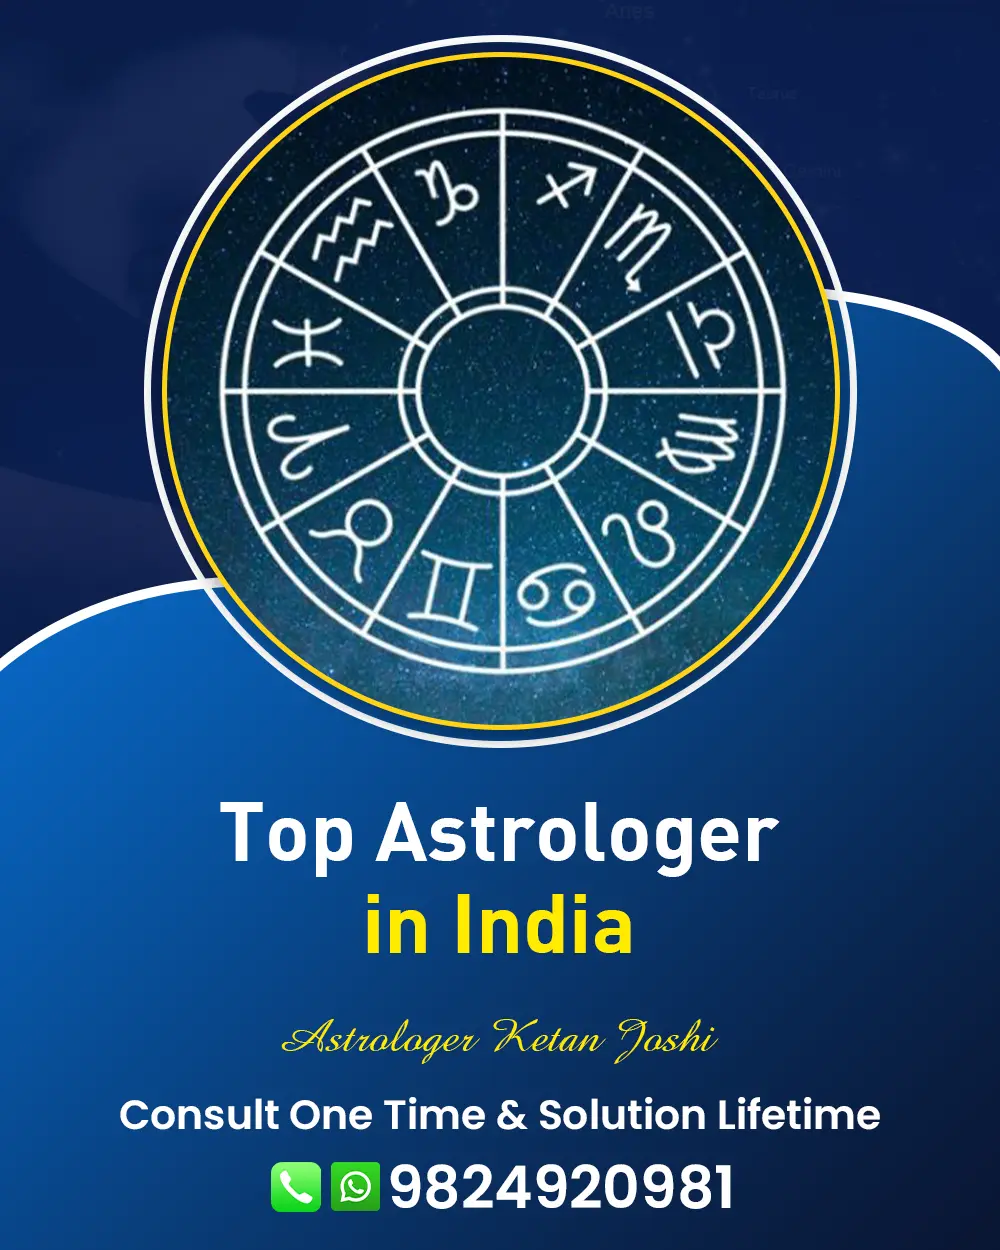 Best Astrologer In Somnath